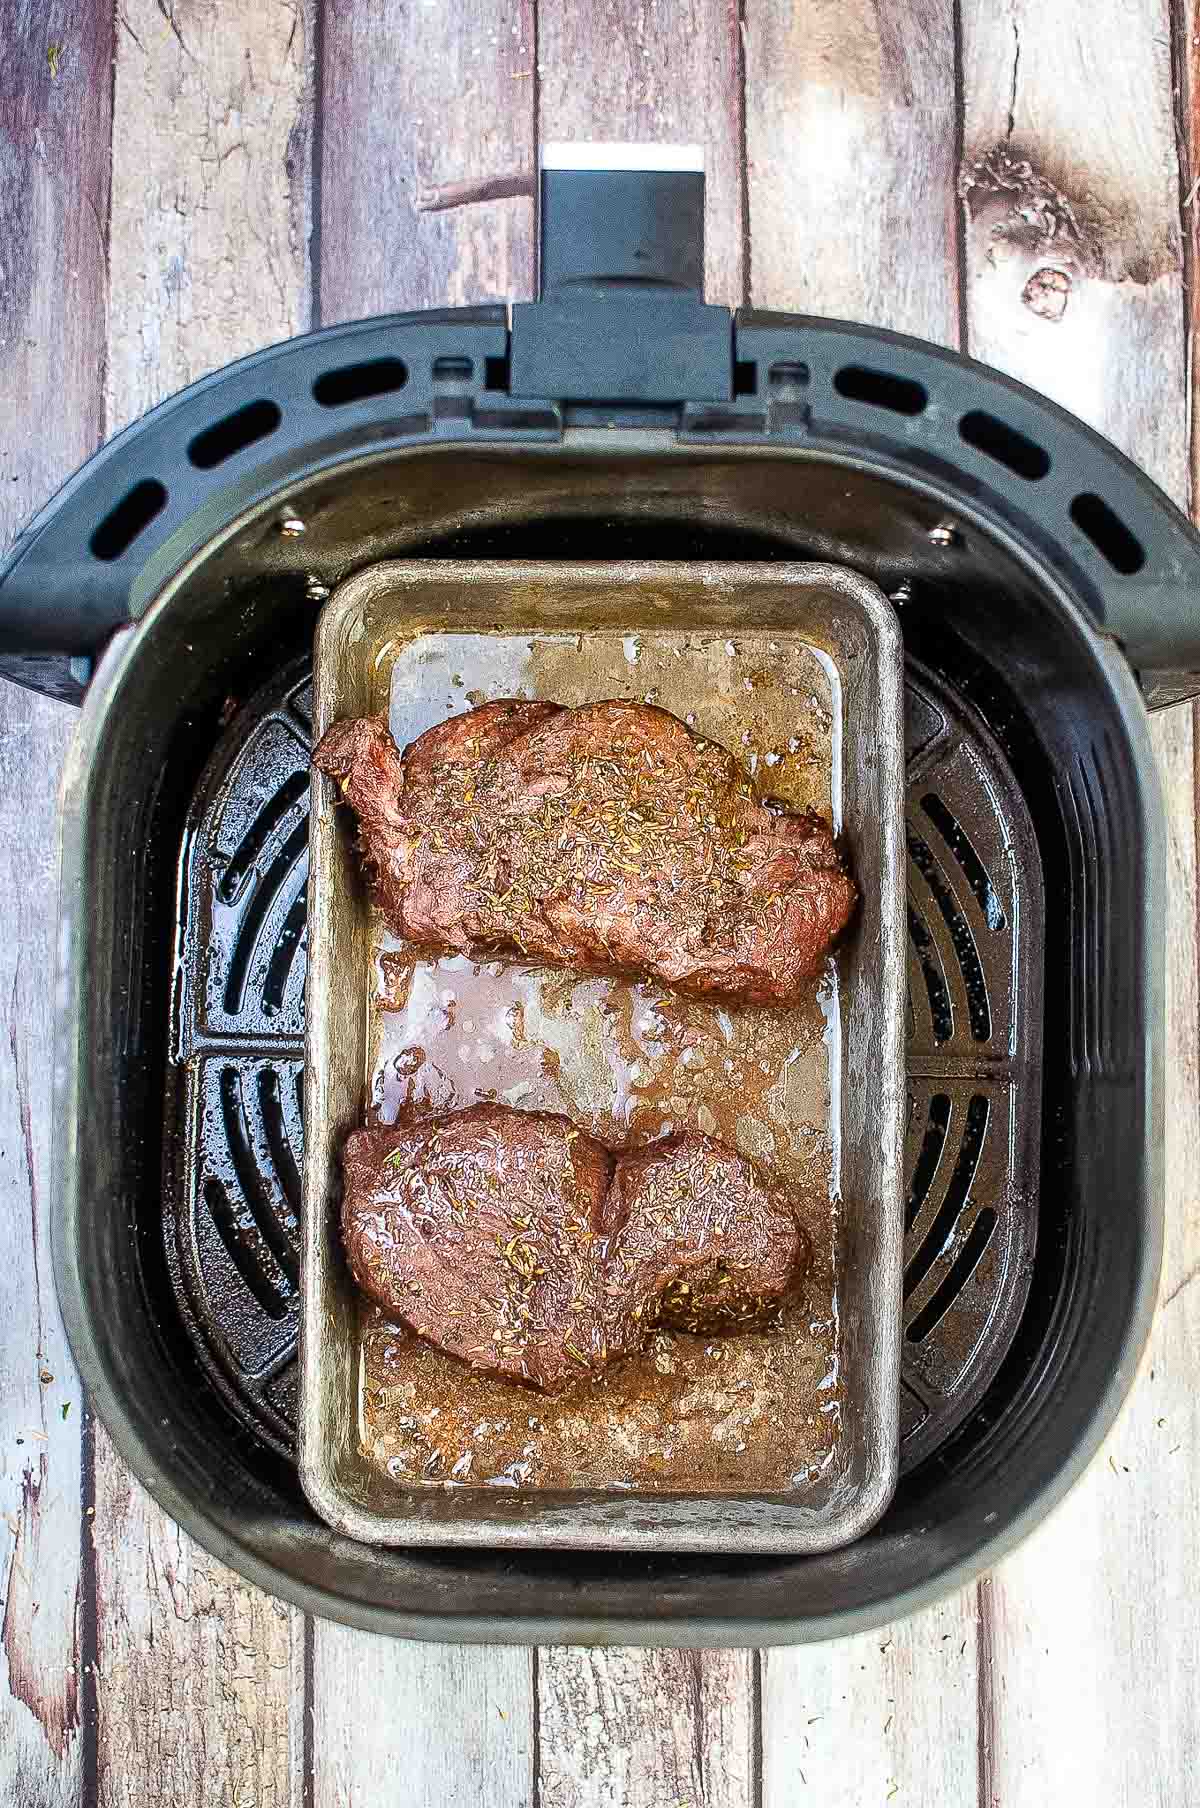 Cooked steaks in pan in air fryer.